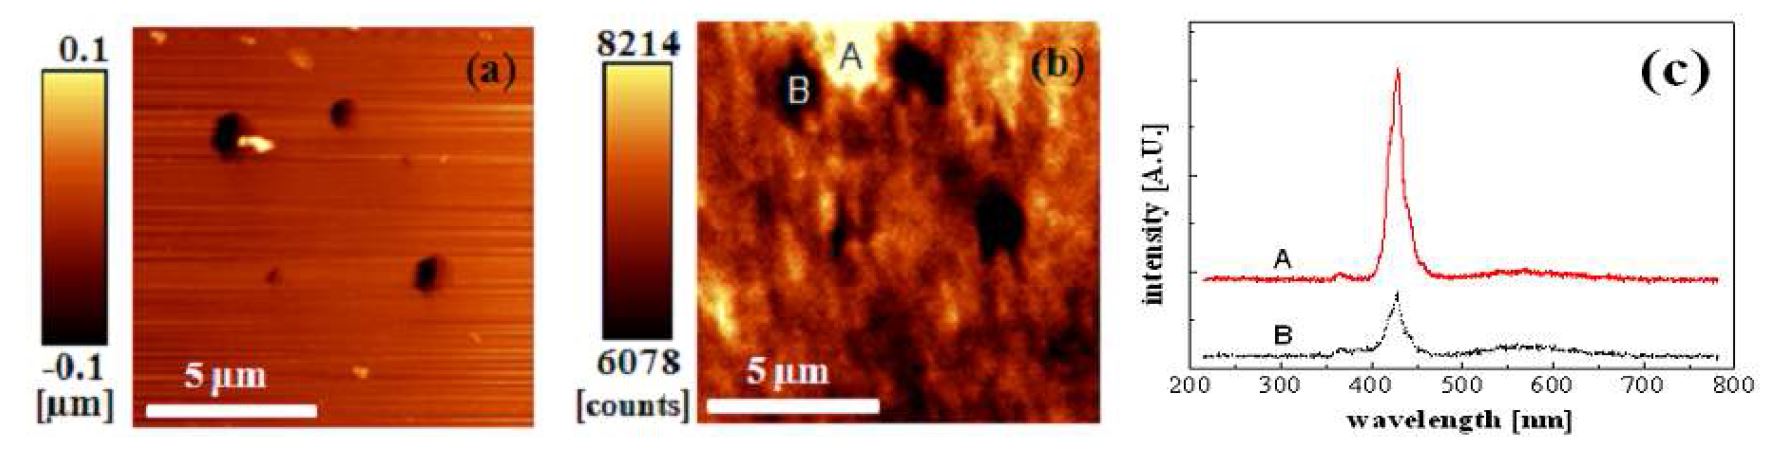 그림 14 자외선 AFM - 공초점 융합현미경을 이용한 InGaN/GaN 의 (a)표면 V 결함과 (b)발광특성의 동시측정결과 및 (c)분광기를 이용한 발광파장 측정결과.